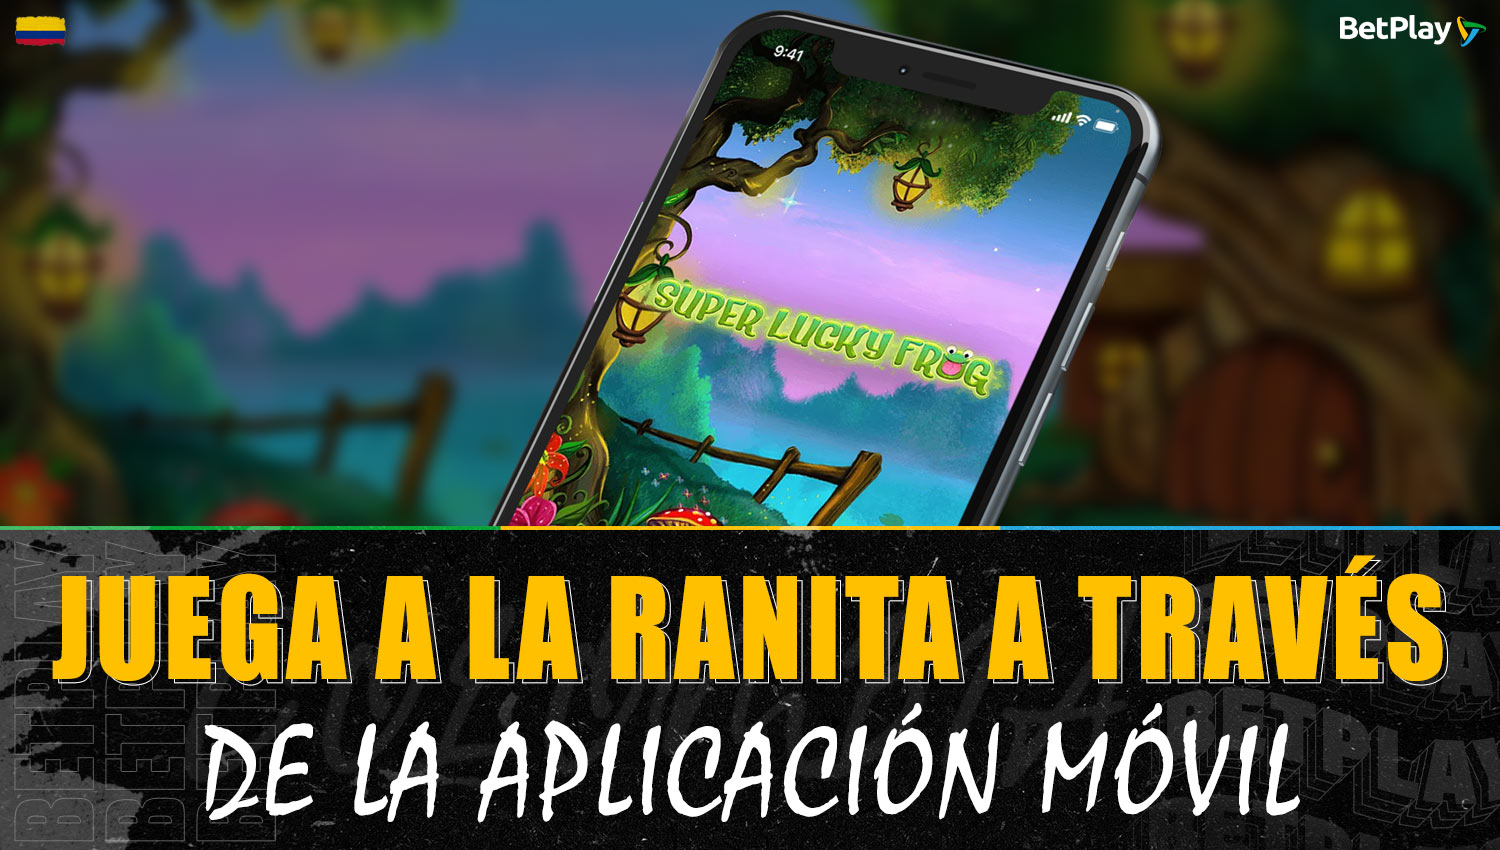 Los jugadores colombianos pueden jugar a "The Little Frog" a través de la aplicación móvil de Betplay